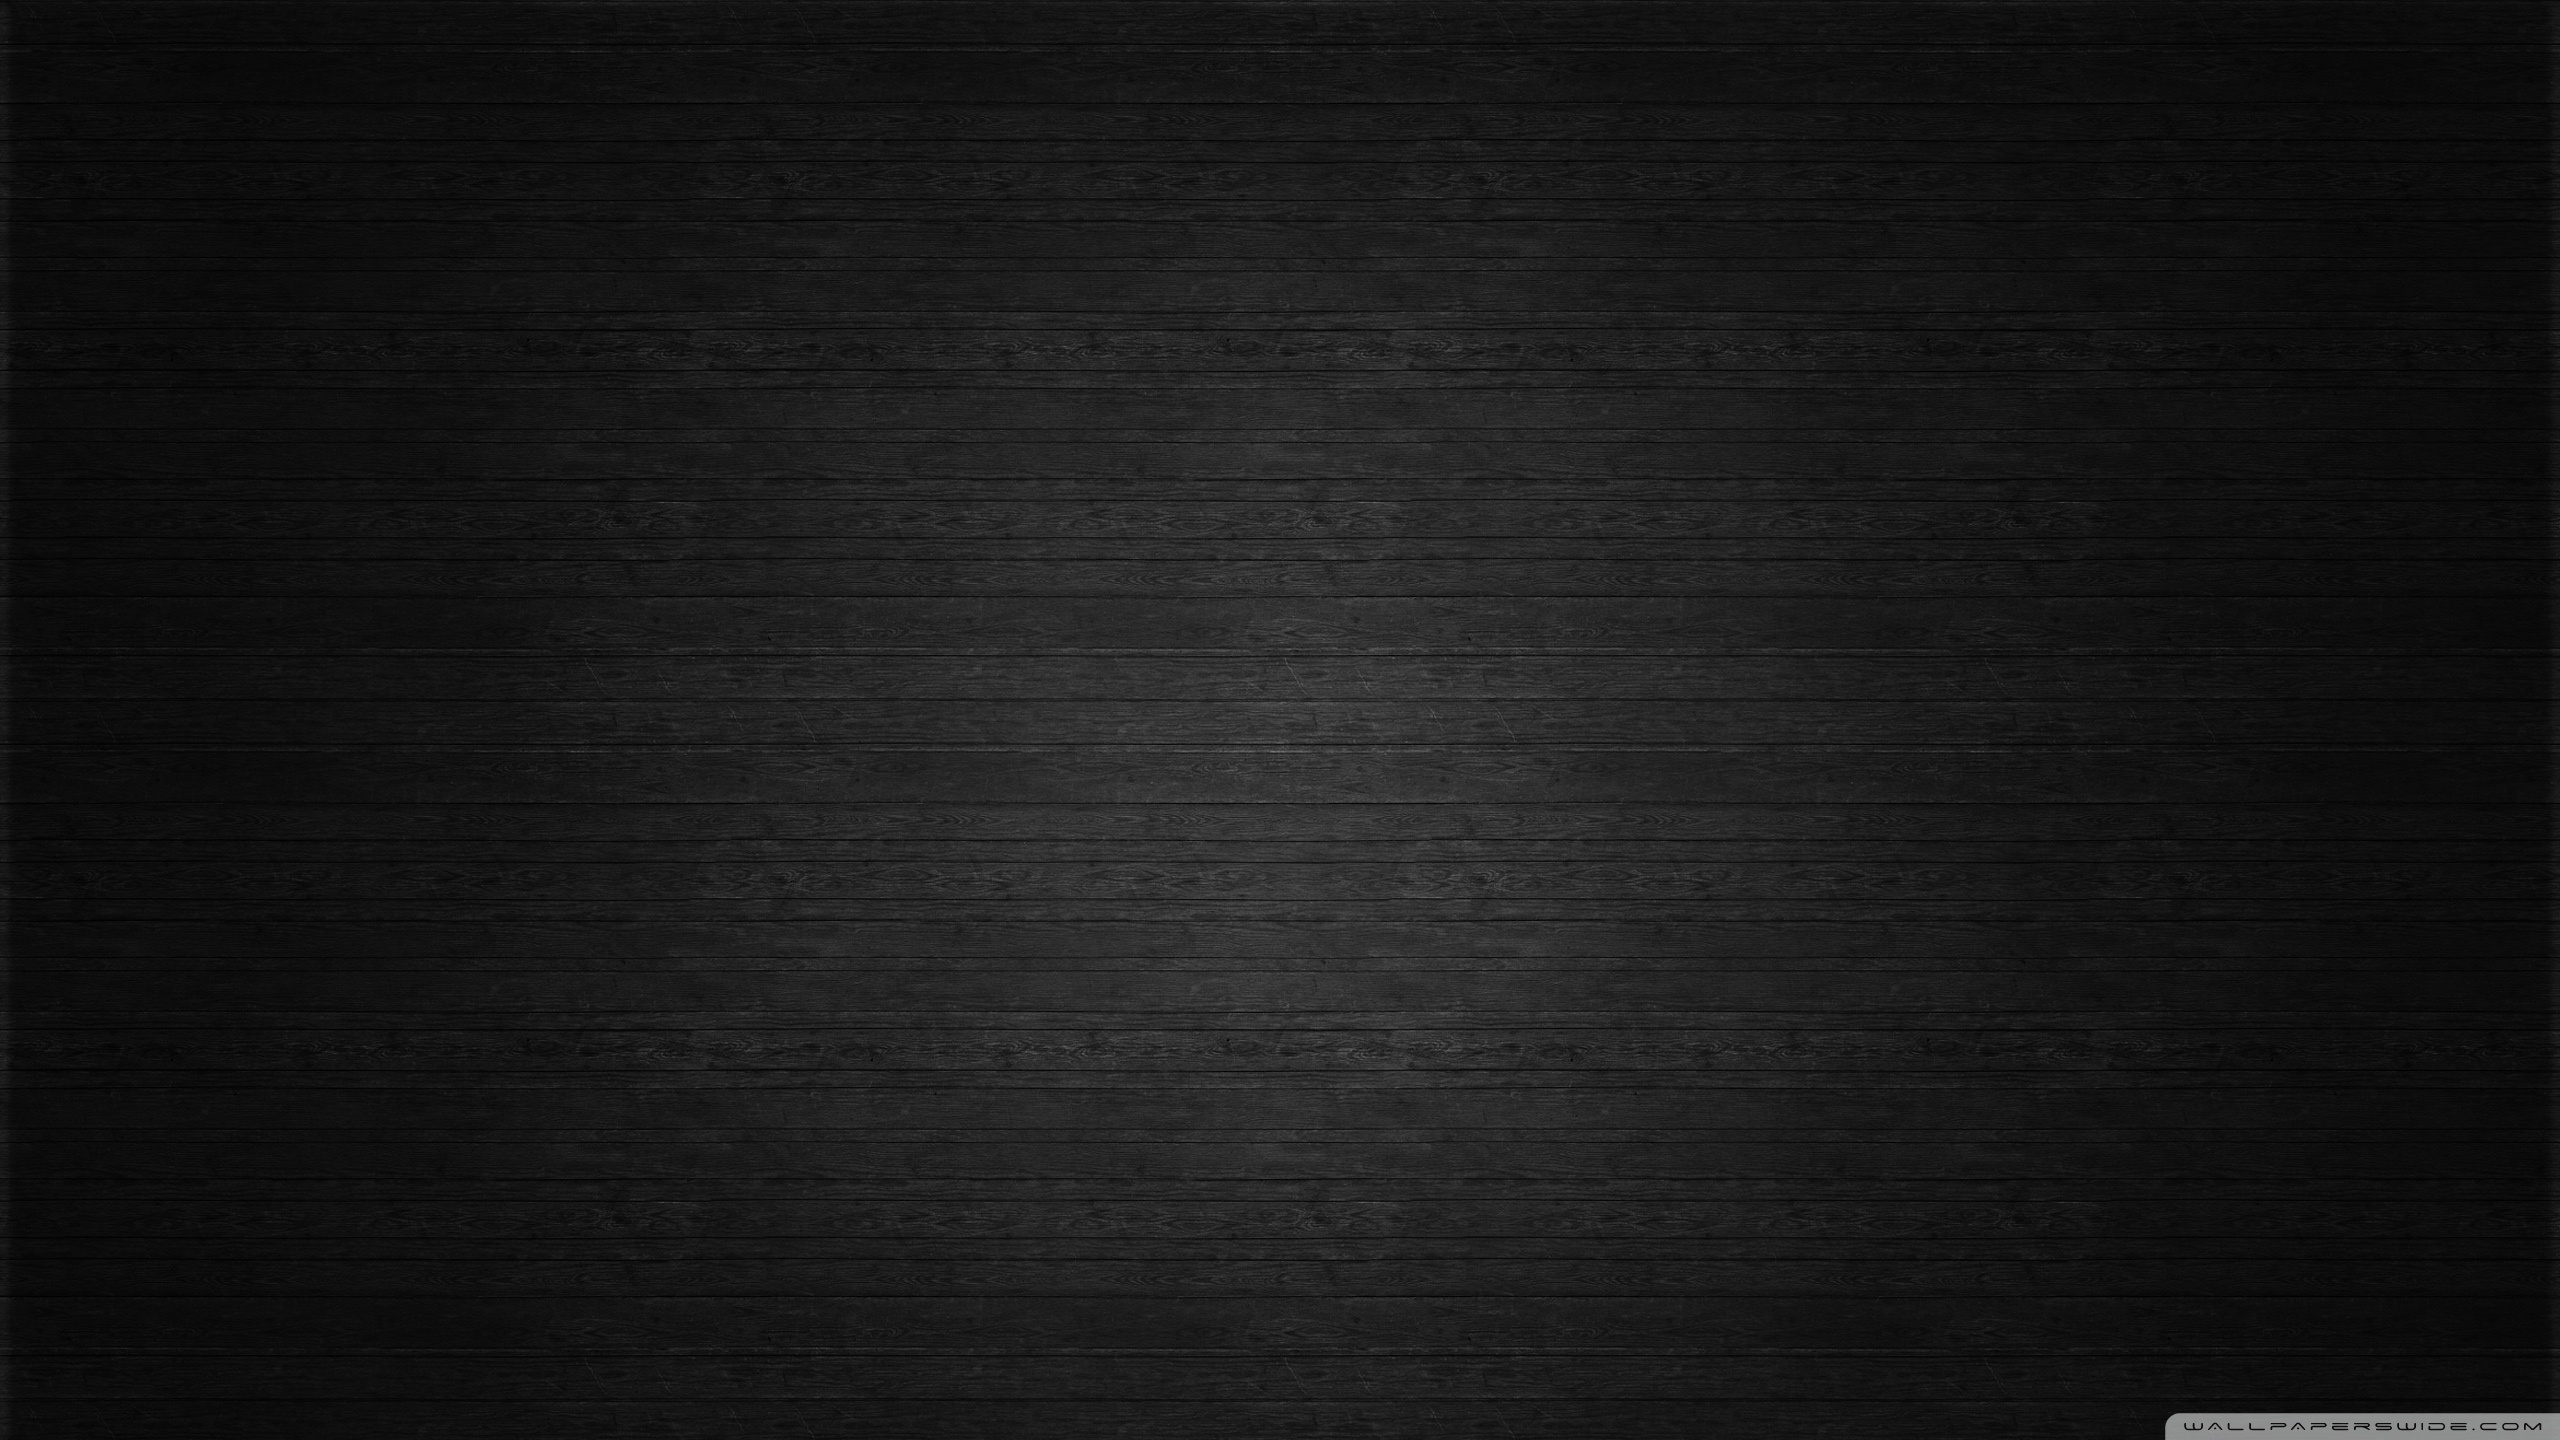 sfondo nero hd,nero,bianco e nero,modello,buio,fotografia in bianco e nero